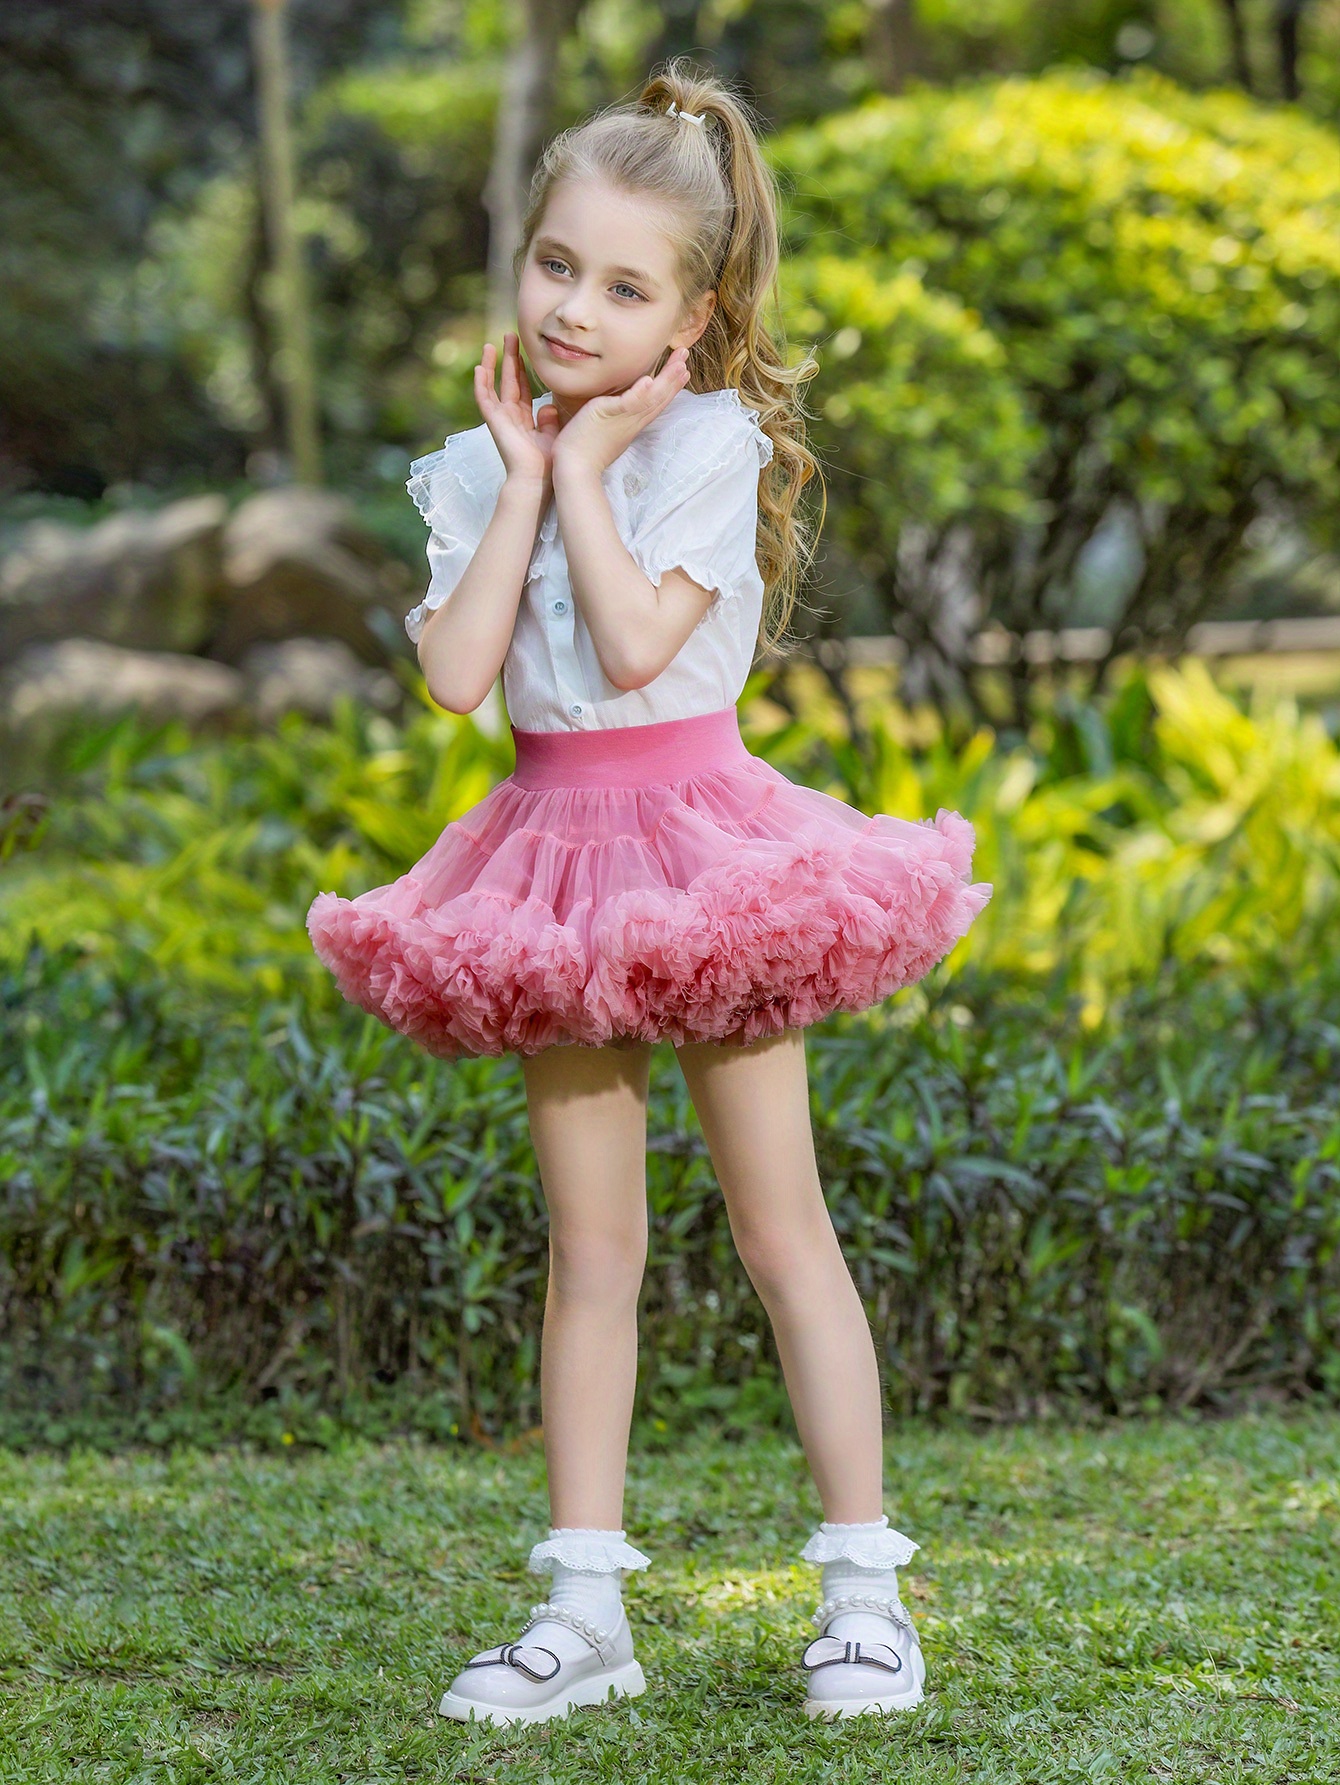 Young Girl Tutu Skirt, Ballet Princess Puffy Skirt, High Waist